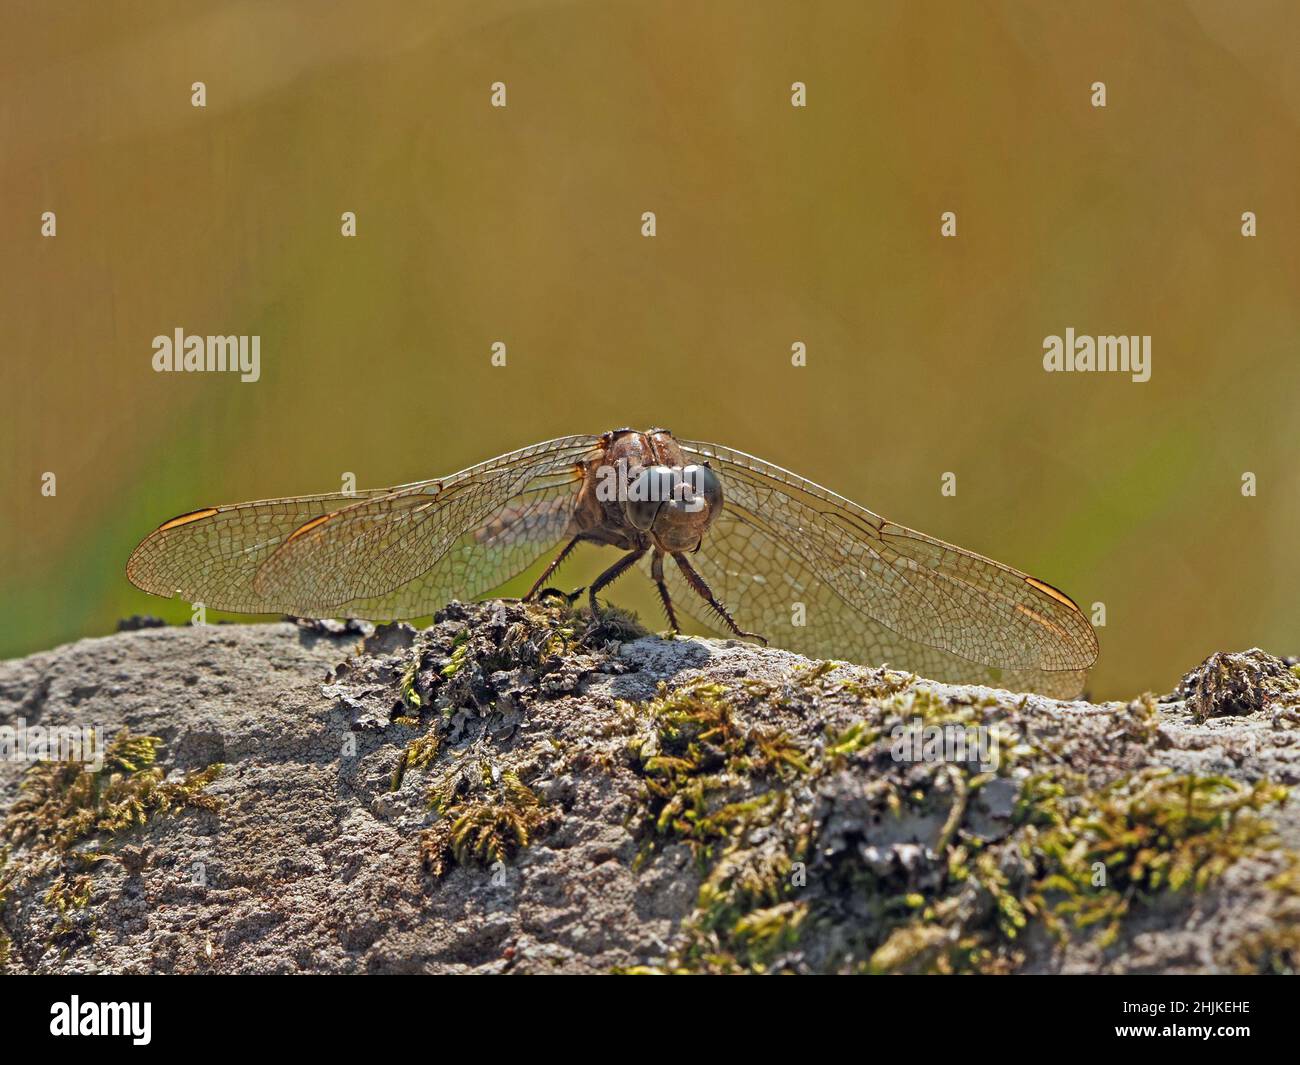 La libellule aux ailes scintillantes s'étend sur une roche mossy en été dans le Yorkshire, en Angleterre, au Royaume-Uni Banque D'Images